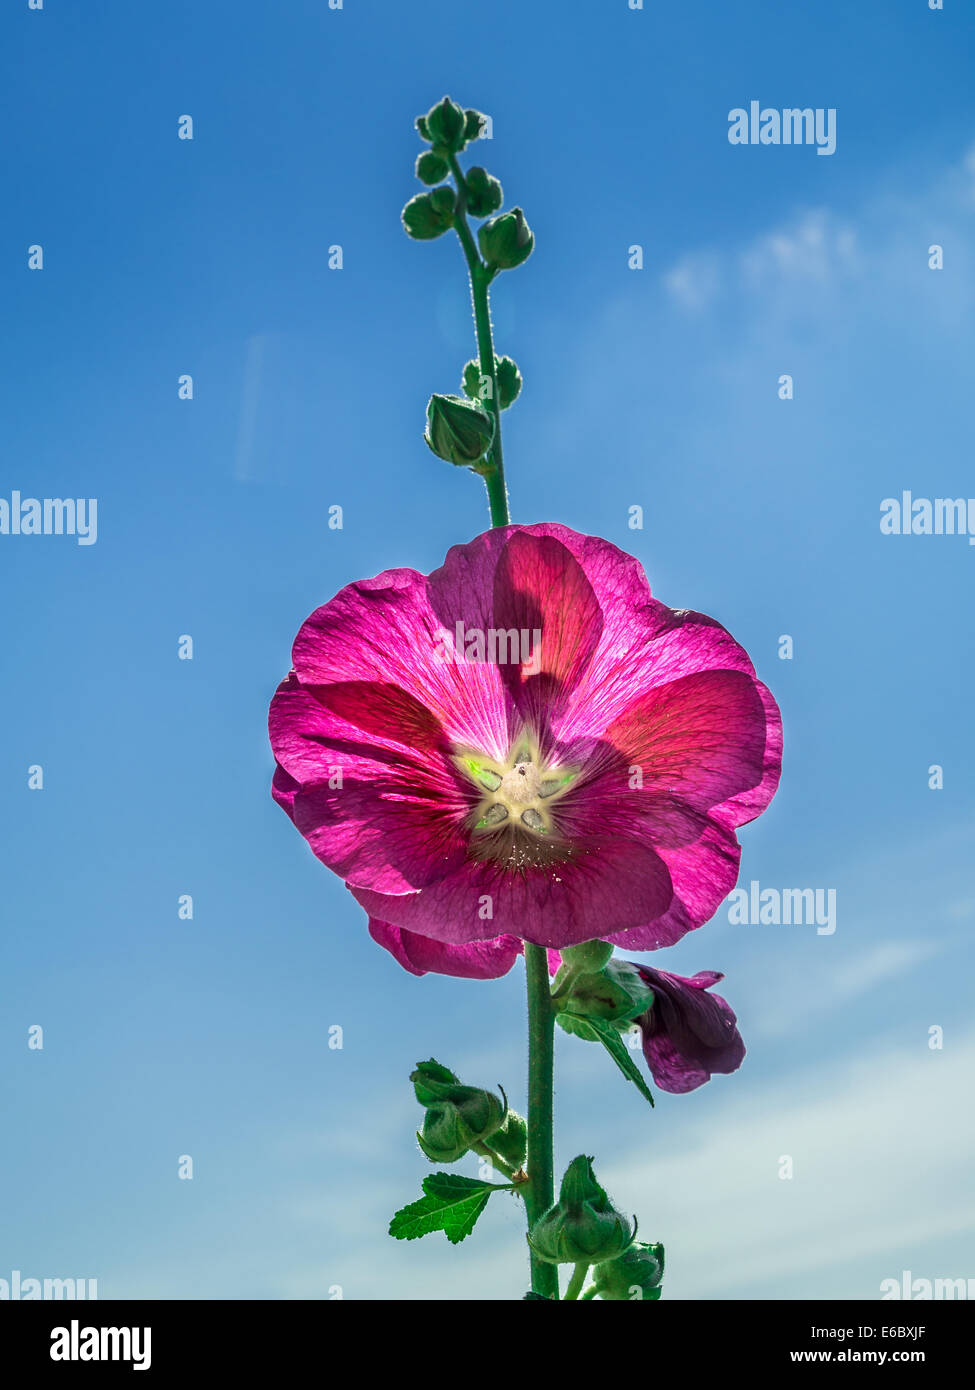 Fleur mauve violet shot against blue sky Banque D'Images